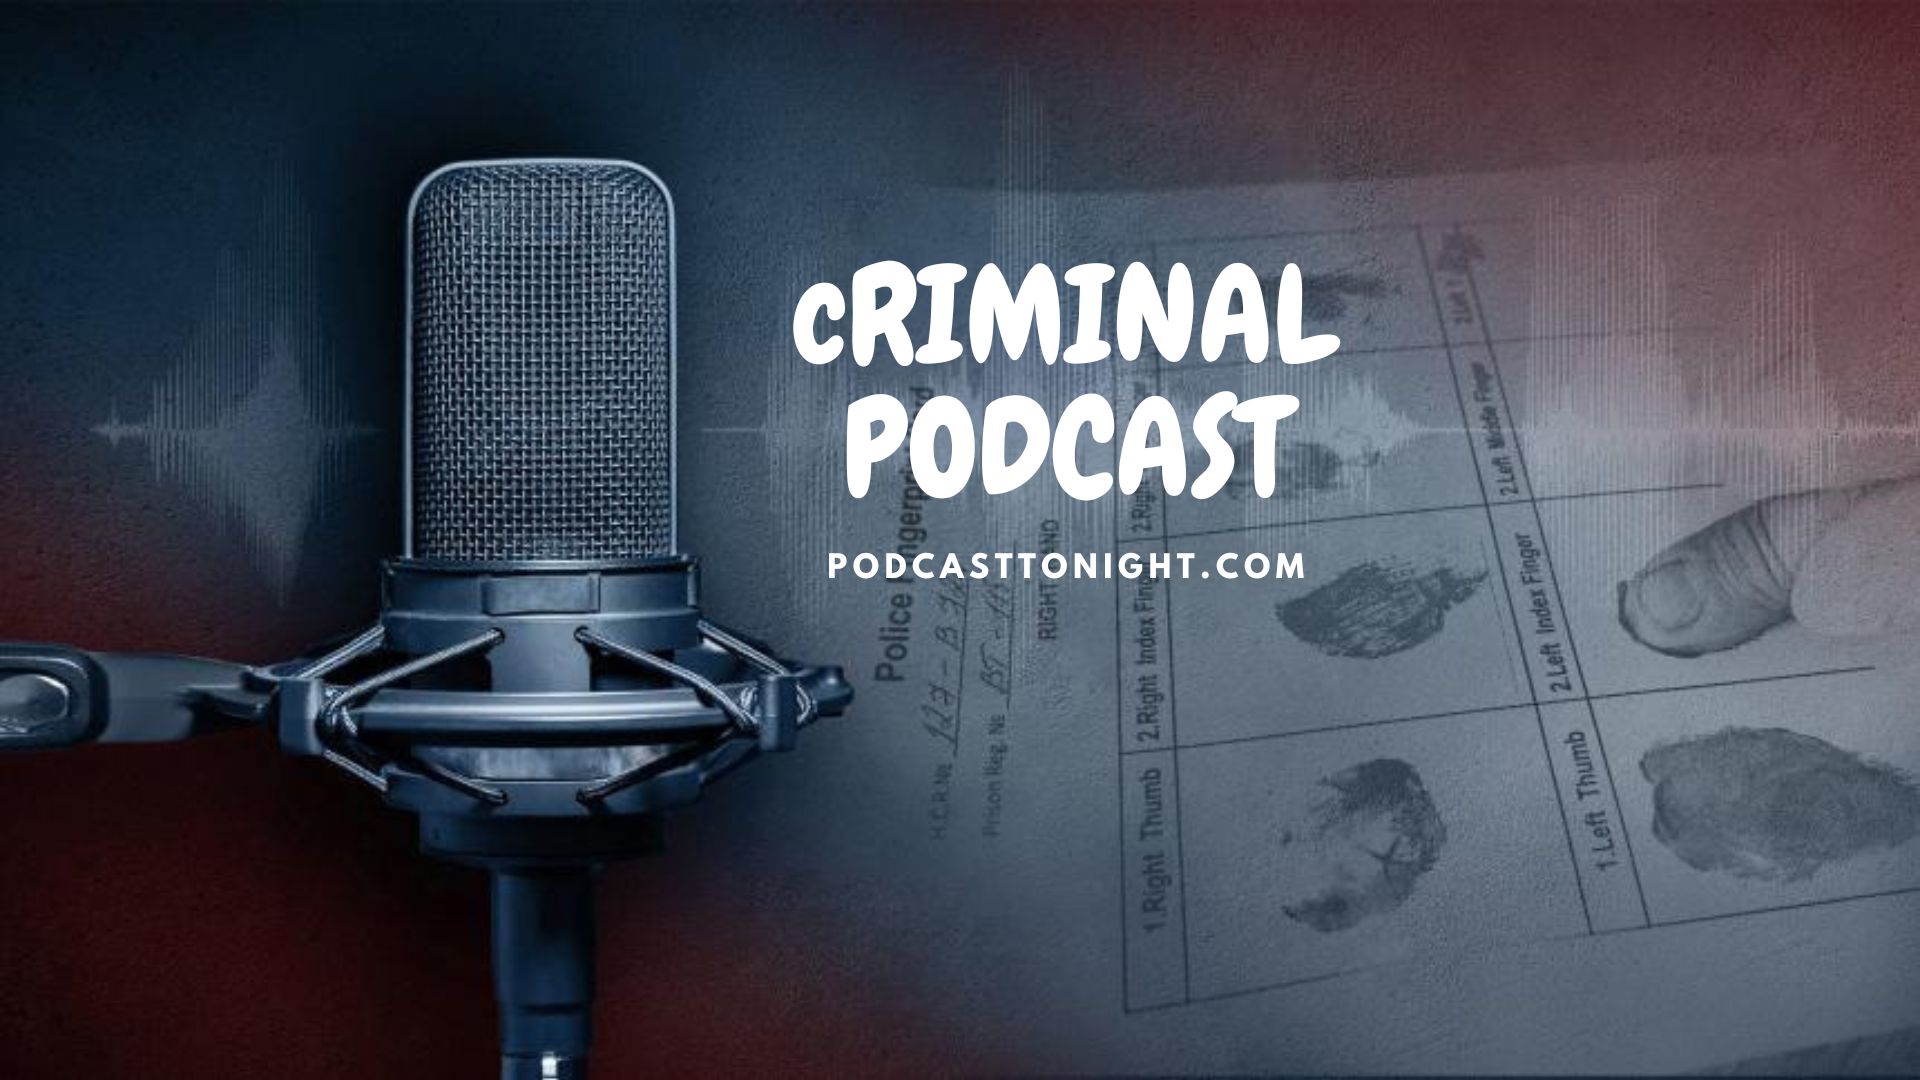 Criminal Podcast – Listen Here